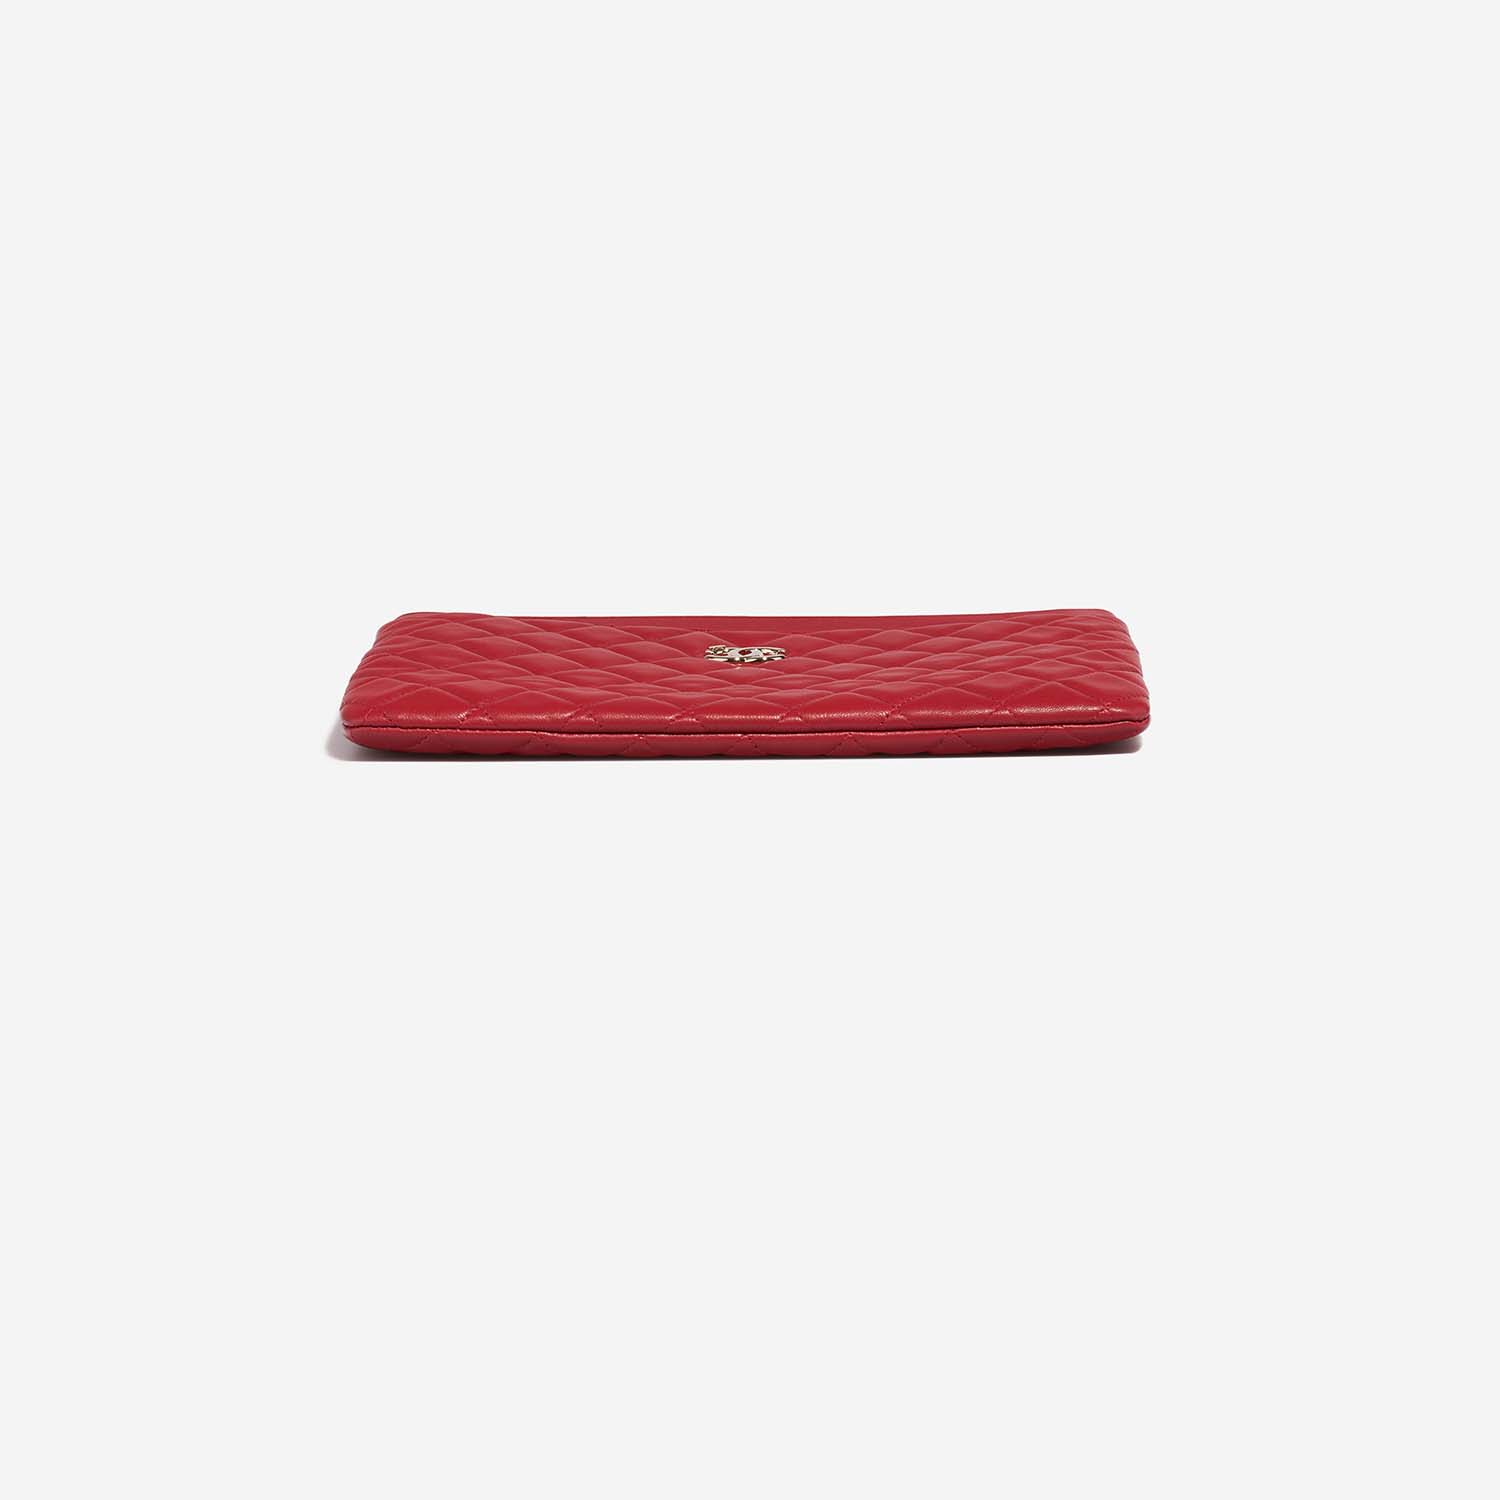 Chanel Timeless Clutch Red Bottom | Verkaufen Sie Ihre Designer-Tasche auf Saclab.com